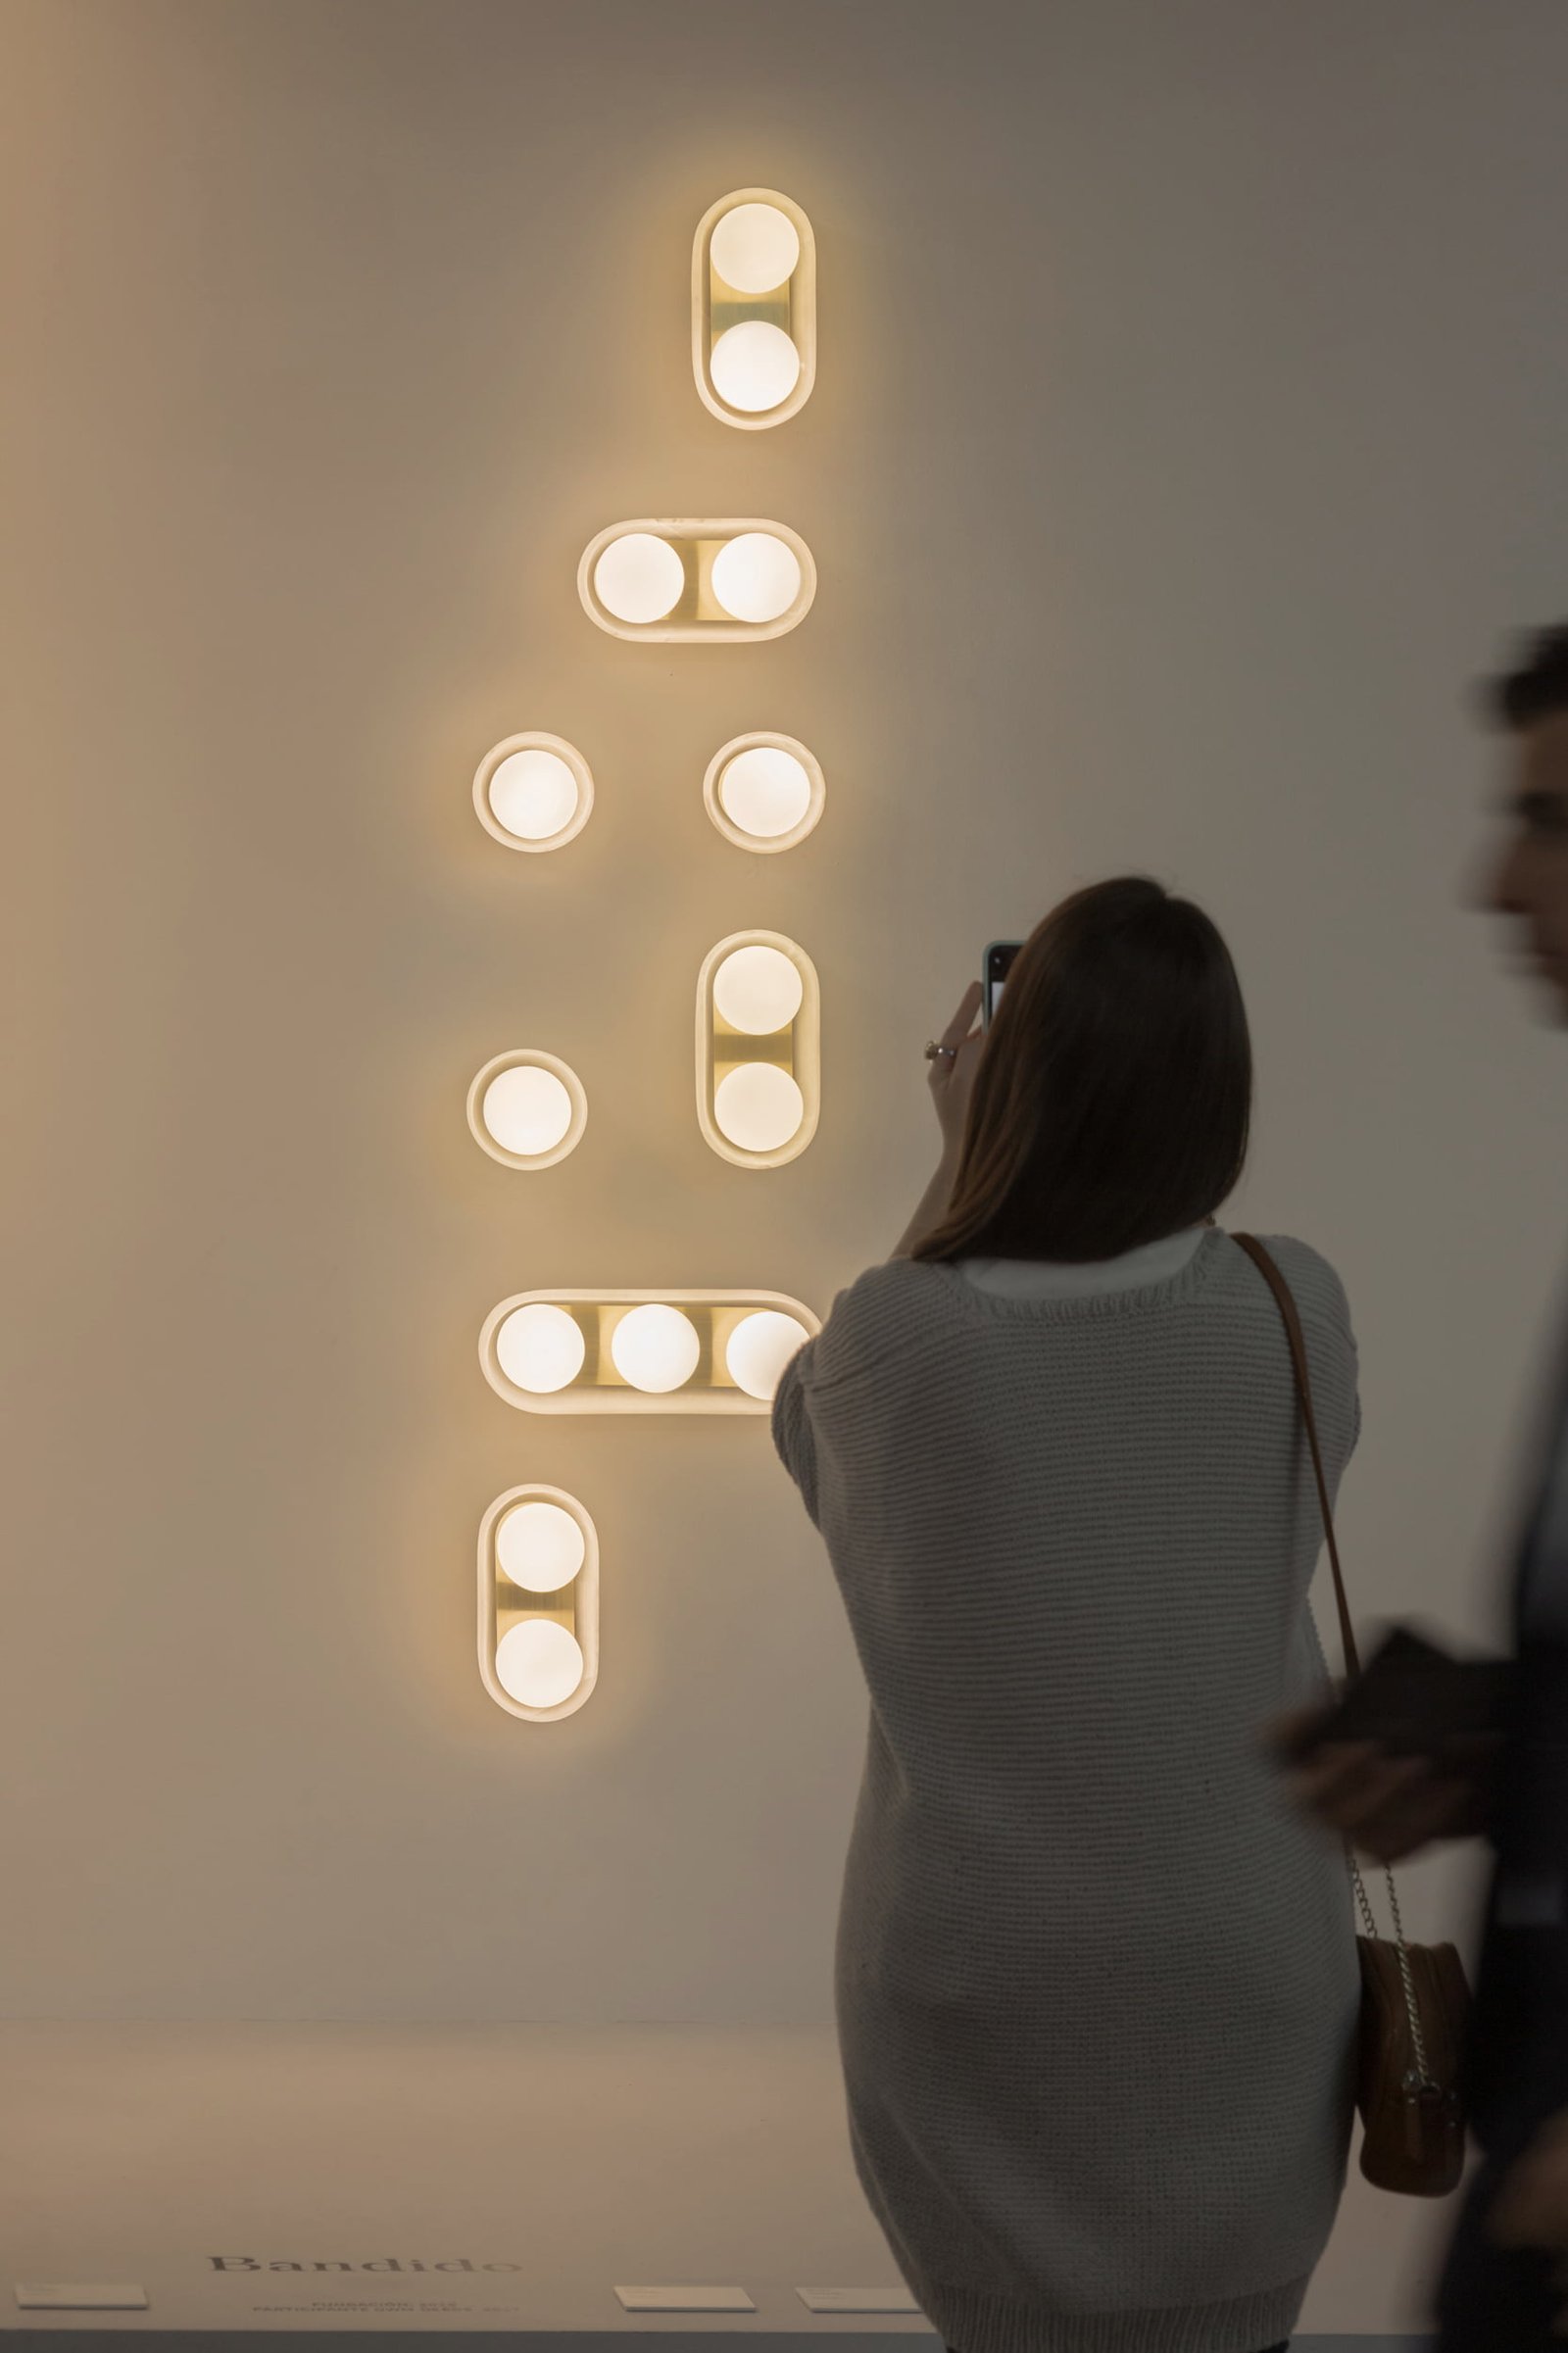 Lámparas de pared DBH 02 esferas de luz cálida y ónix diseñadas por Bandido Studio en XV Aniversario Design Week México.